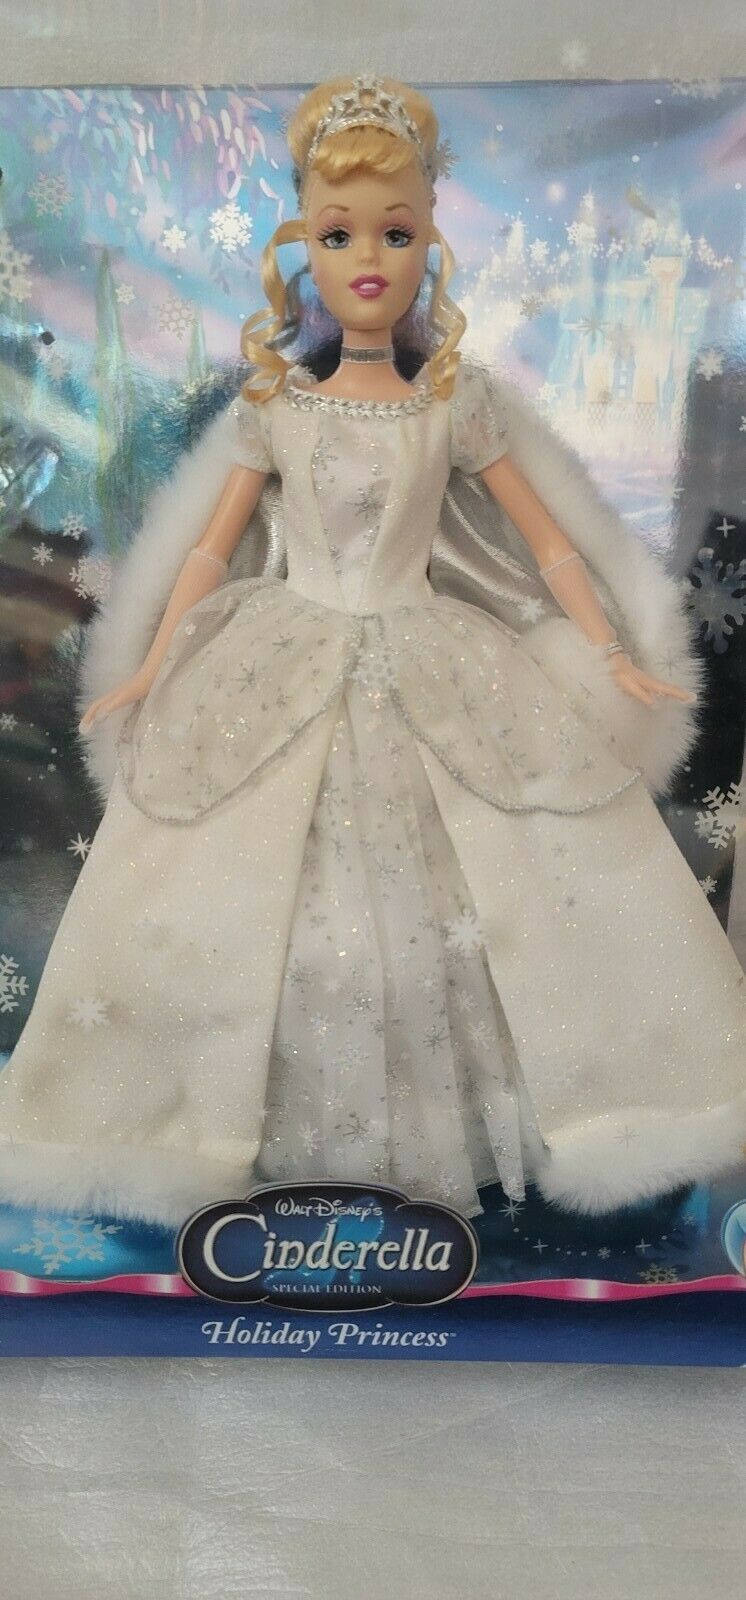 Disney Princess Cinderella Special Edition Holiday Princess 2004 Nib Mattel